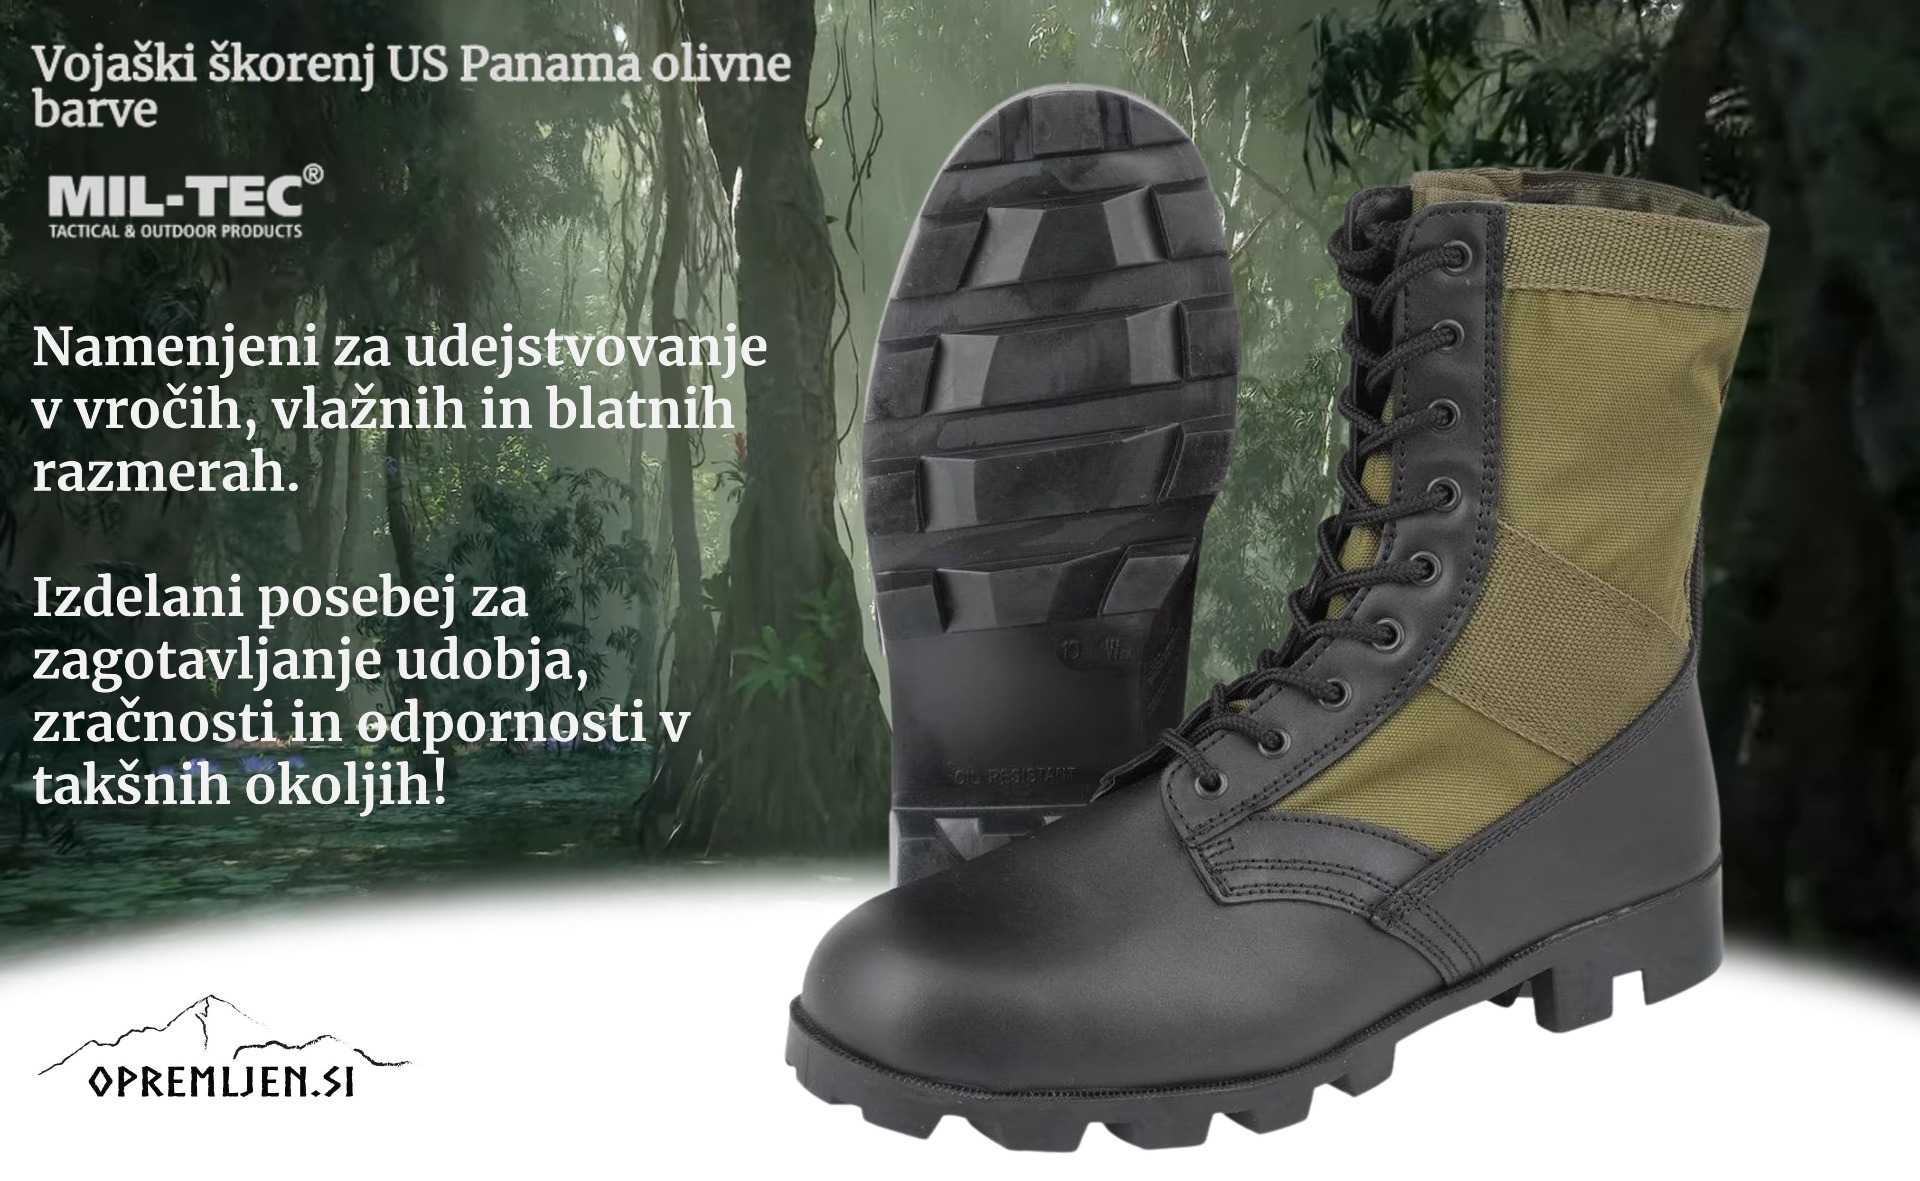 Udoben in trpežen vojaški škorenj Panama v olivni barvi - idealen za terenske aktivnosti. Najboljša vojaška obutev za prodajo in izobraževanje. Nakup zdaj!